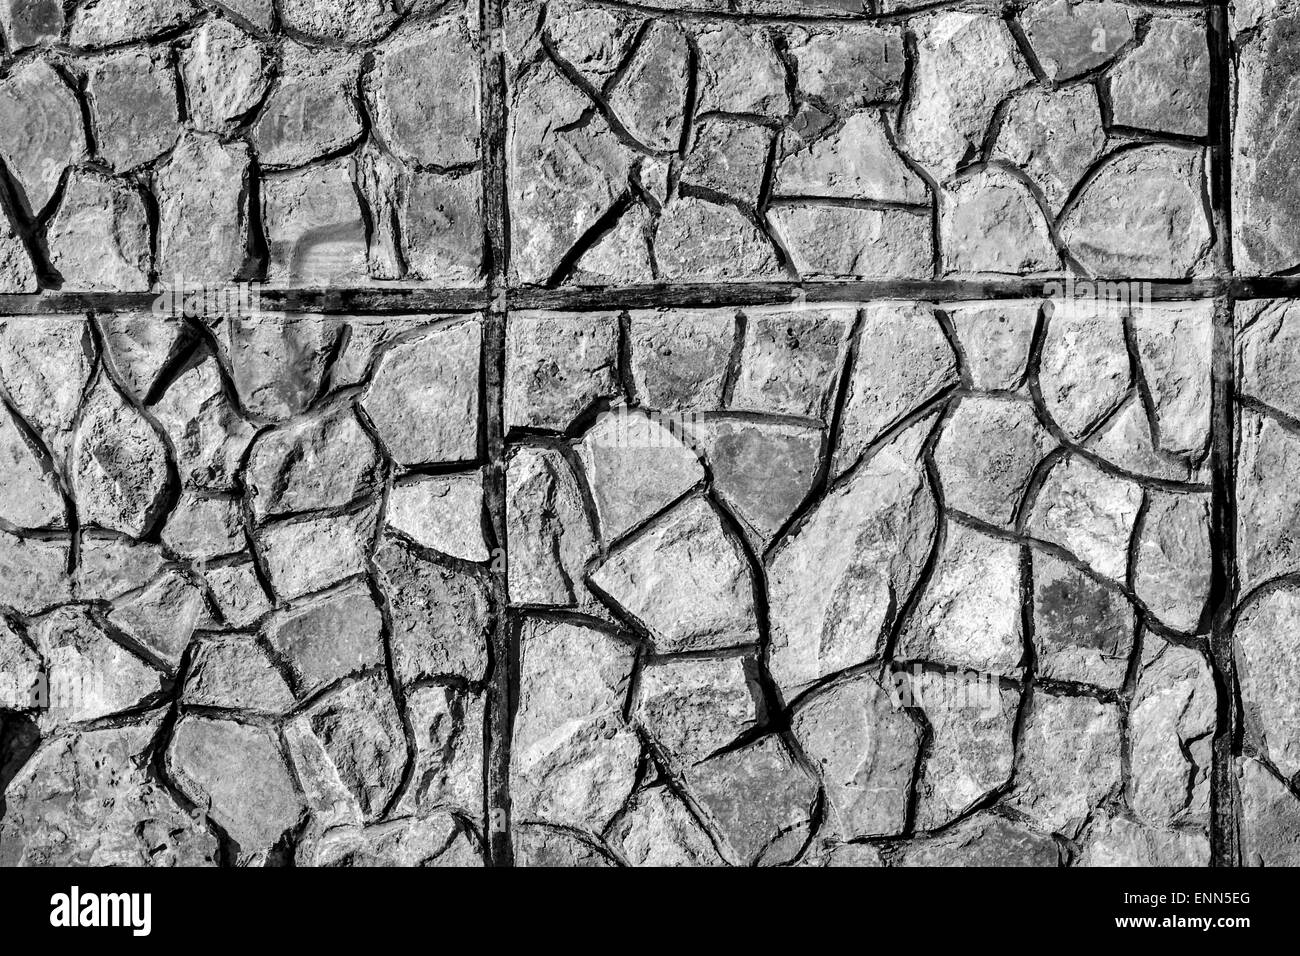 Zement-Felsen schlossen sich zusammen zu einer gut ausgebauten Stadtmauer Stockfoto